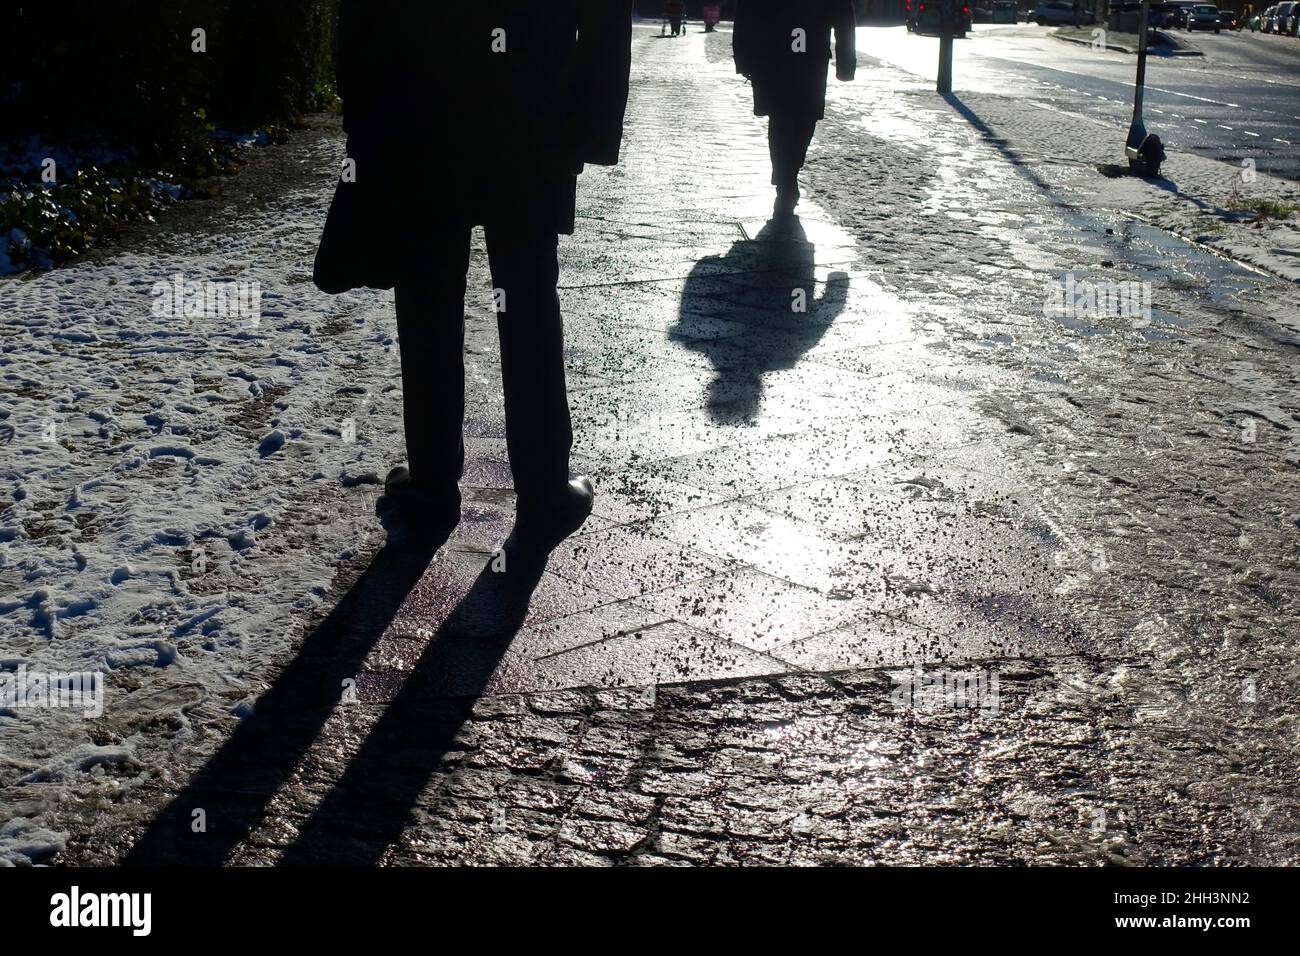 Black ice on a sidewalk in Berlin Stock Photo